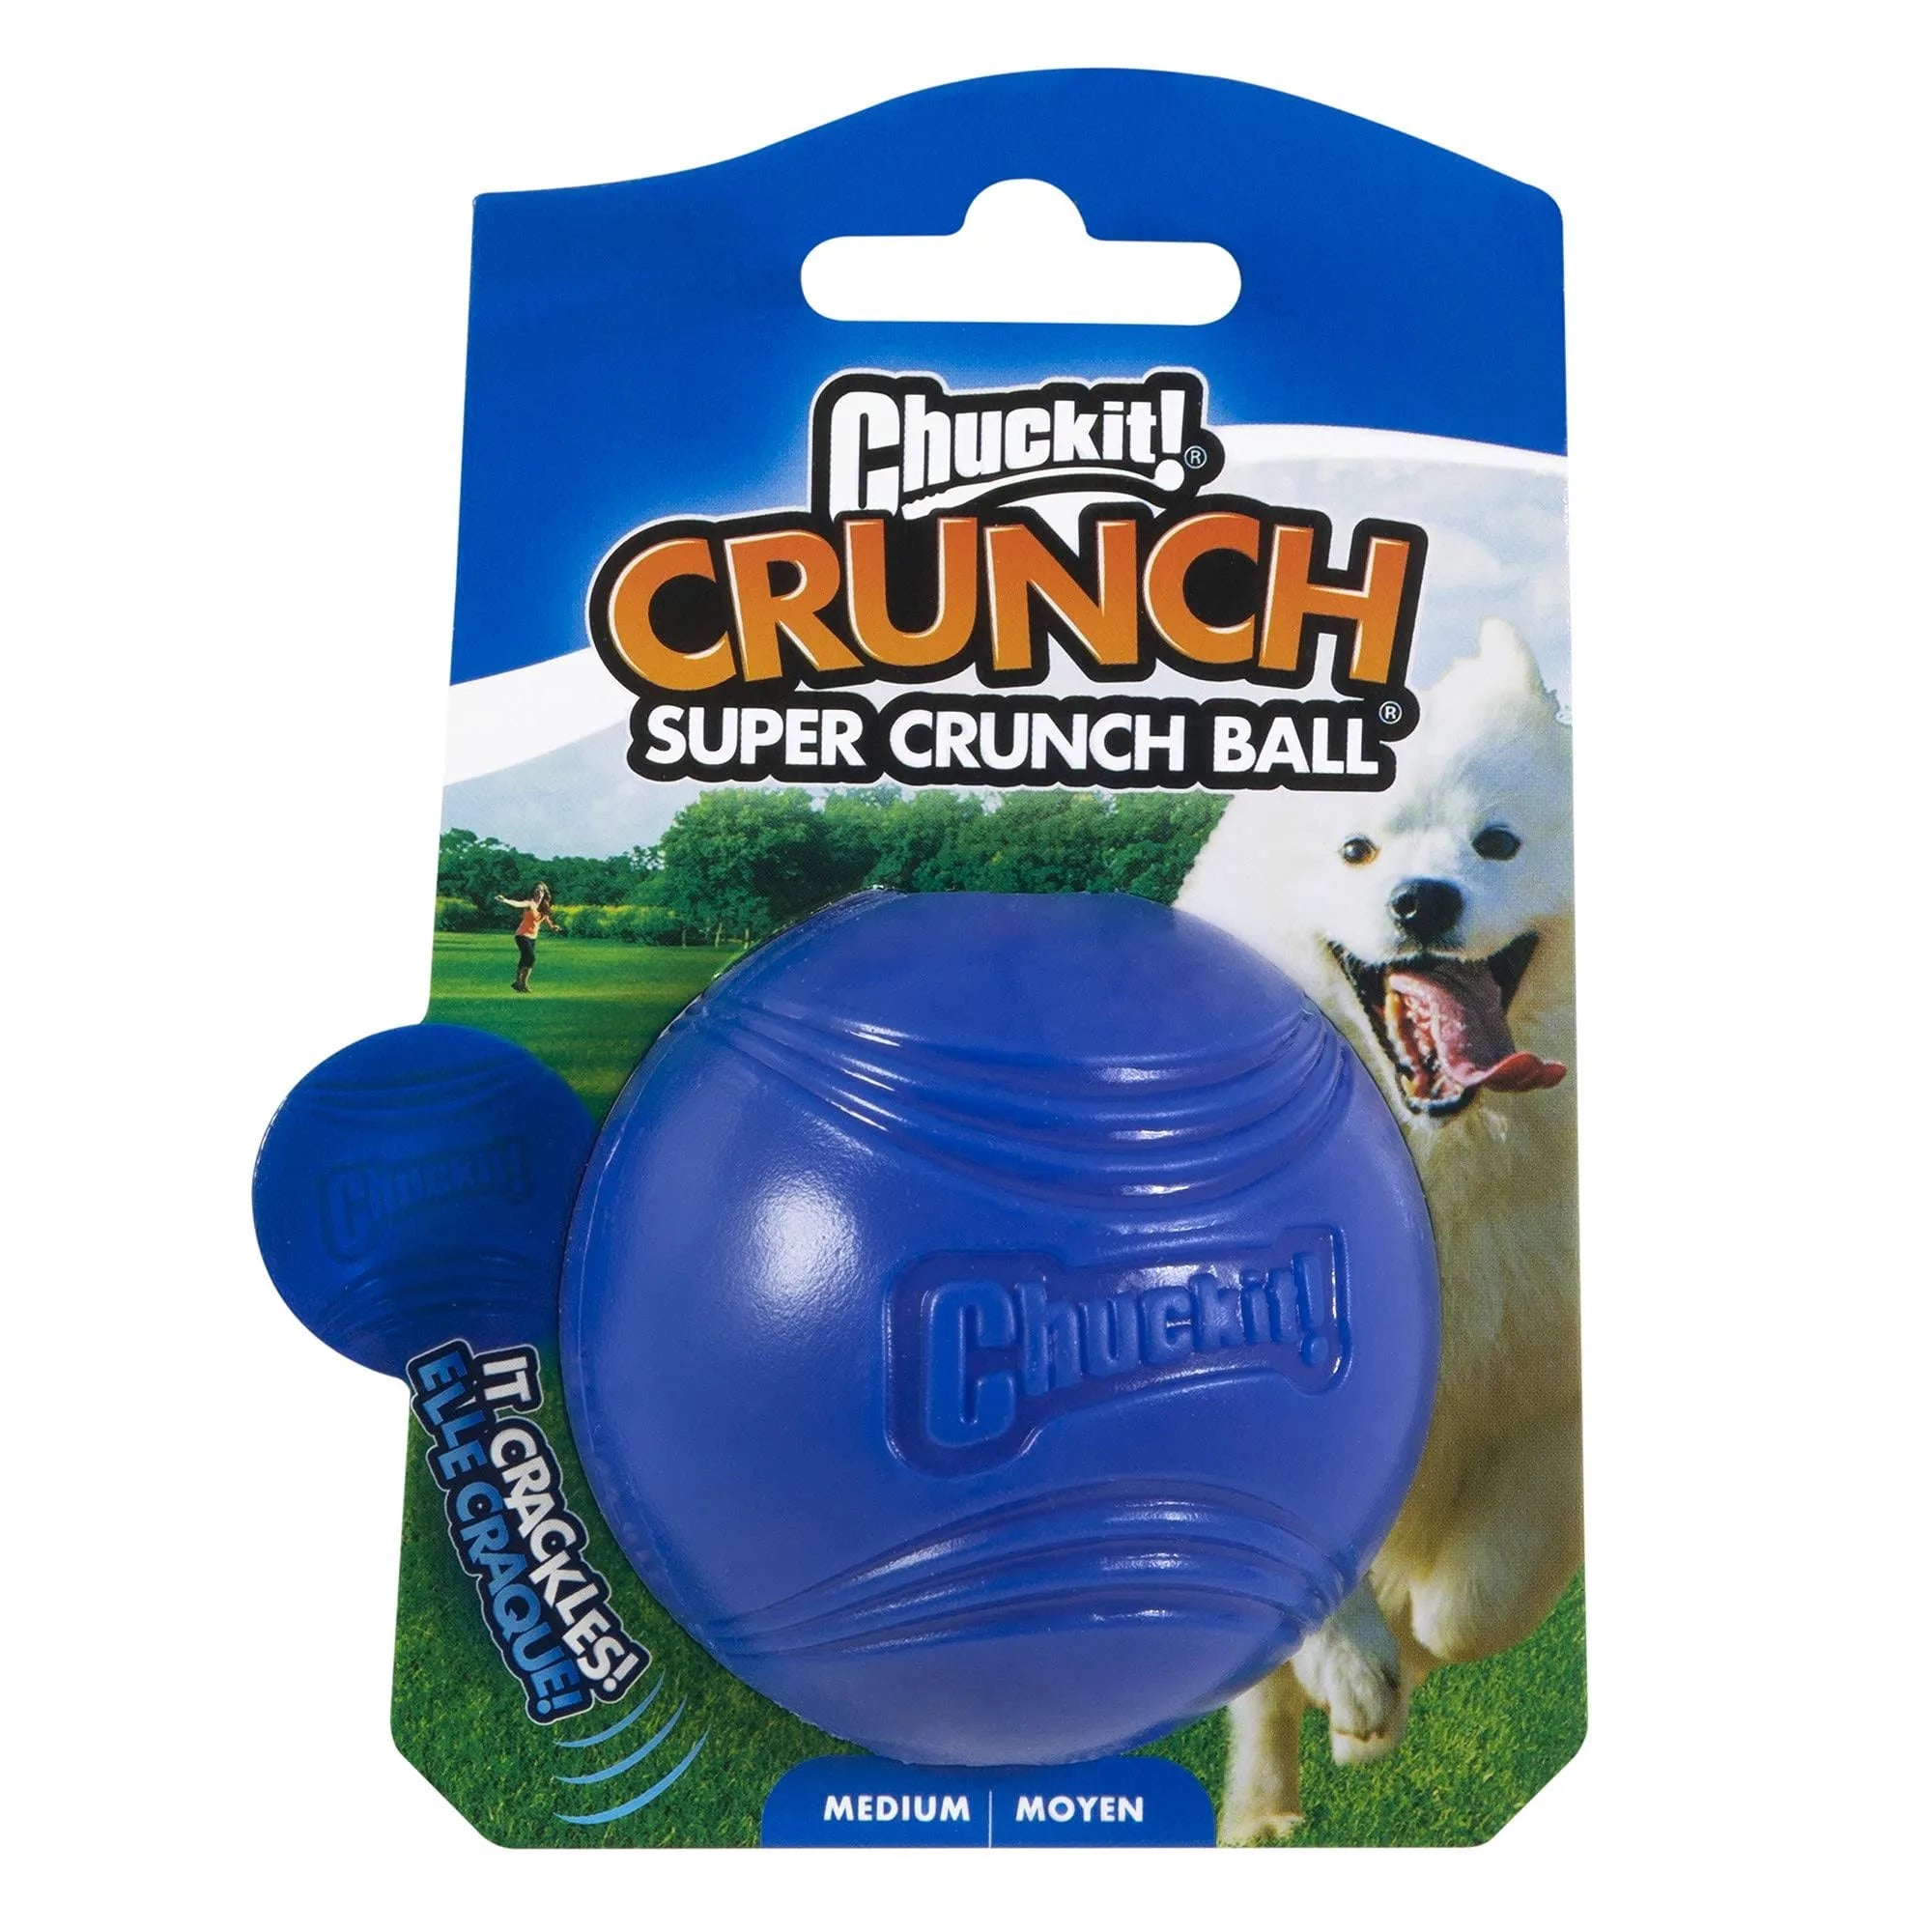 Chuckit! Crunch Super Crunch Ball, Medium